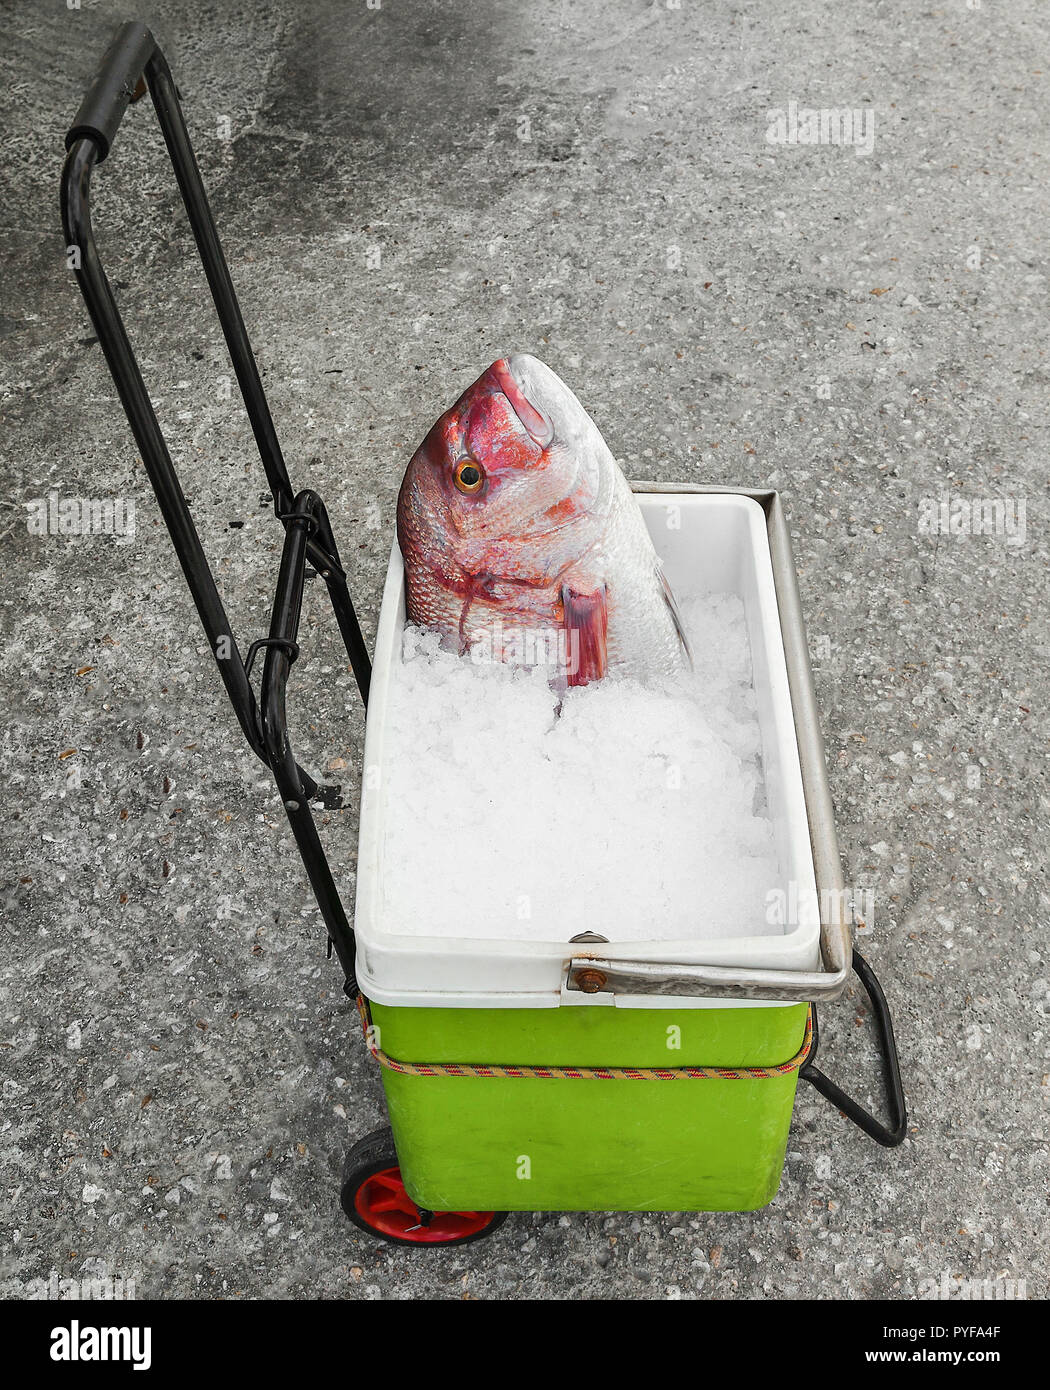 Lutiano rosso testa di pesce guardando in alto sulla benna con ghiaccio tritato su un carrello per i bagagli. Isolato. Foto Stock